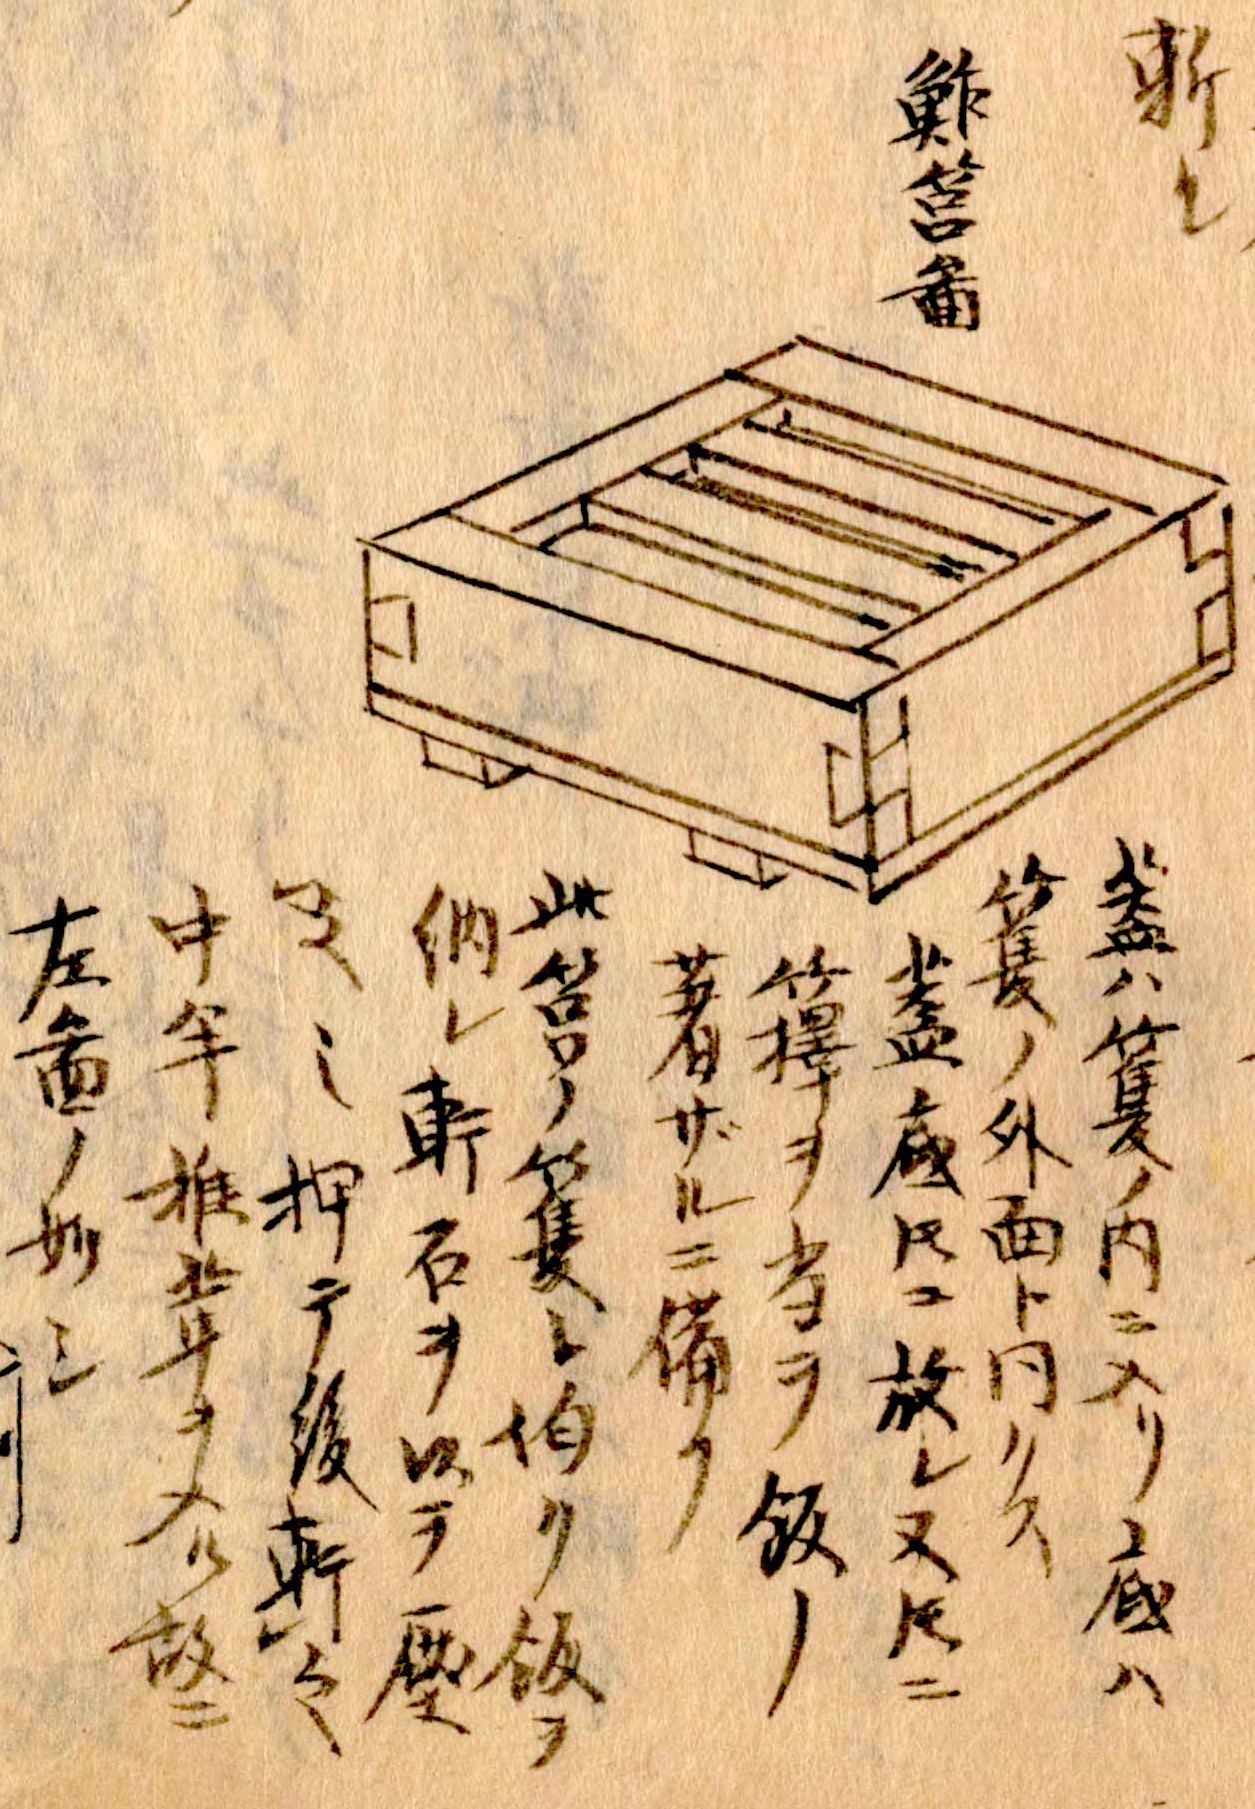 La technique hakozushi utilisée à l'époque de Kitagawa Morisada n'a guère évolué depuis. La garniture est posée sur du riz vinaigré, un couvercle est posé dessus, puis le tout est pressé à la main ou à l’aide d’un poids. Illustration extraite du Morisada mankô (« Encyclopédie de Morisada »), reproduite avec l'aimable autorisation de la Bibliothèque nationale de la Diète.